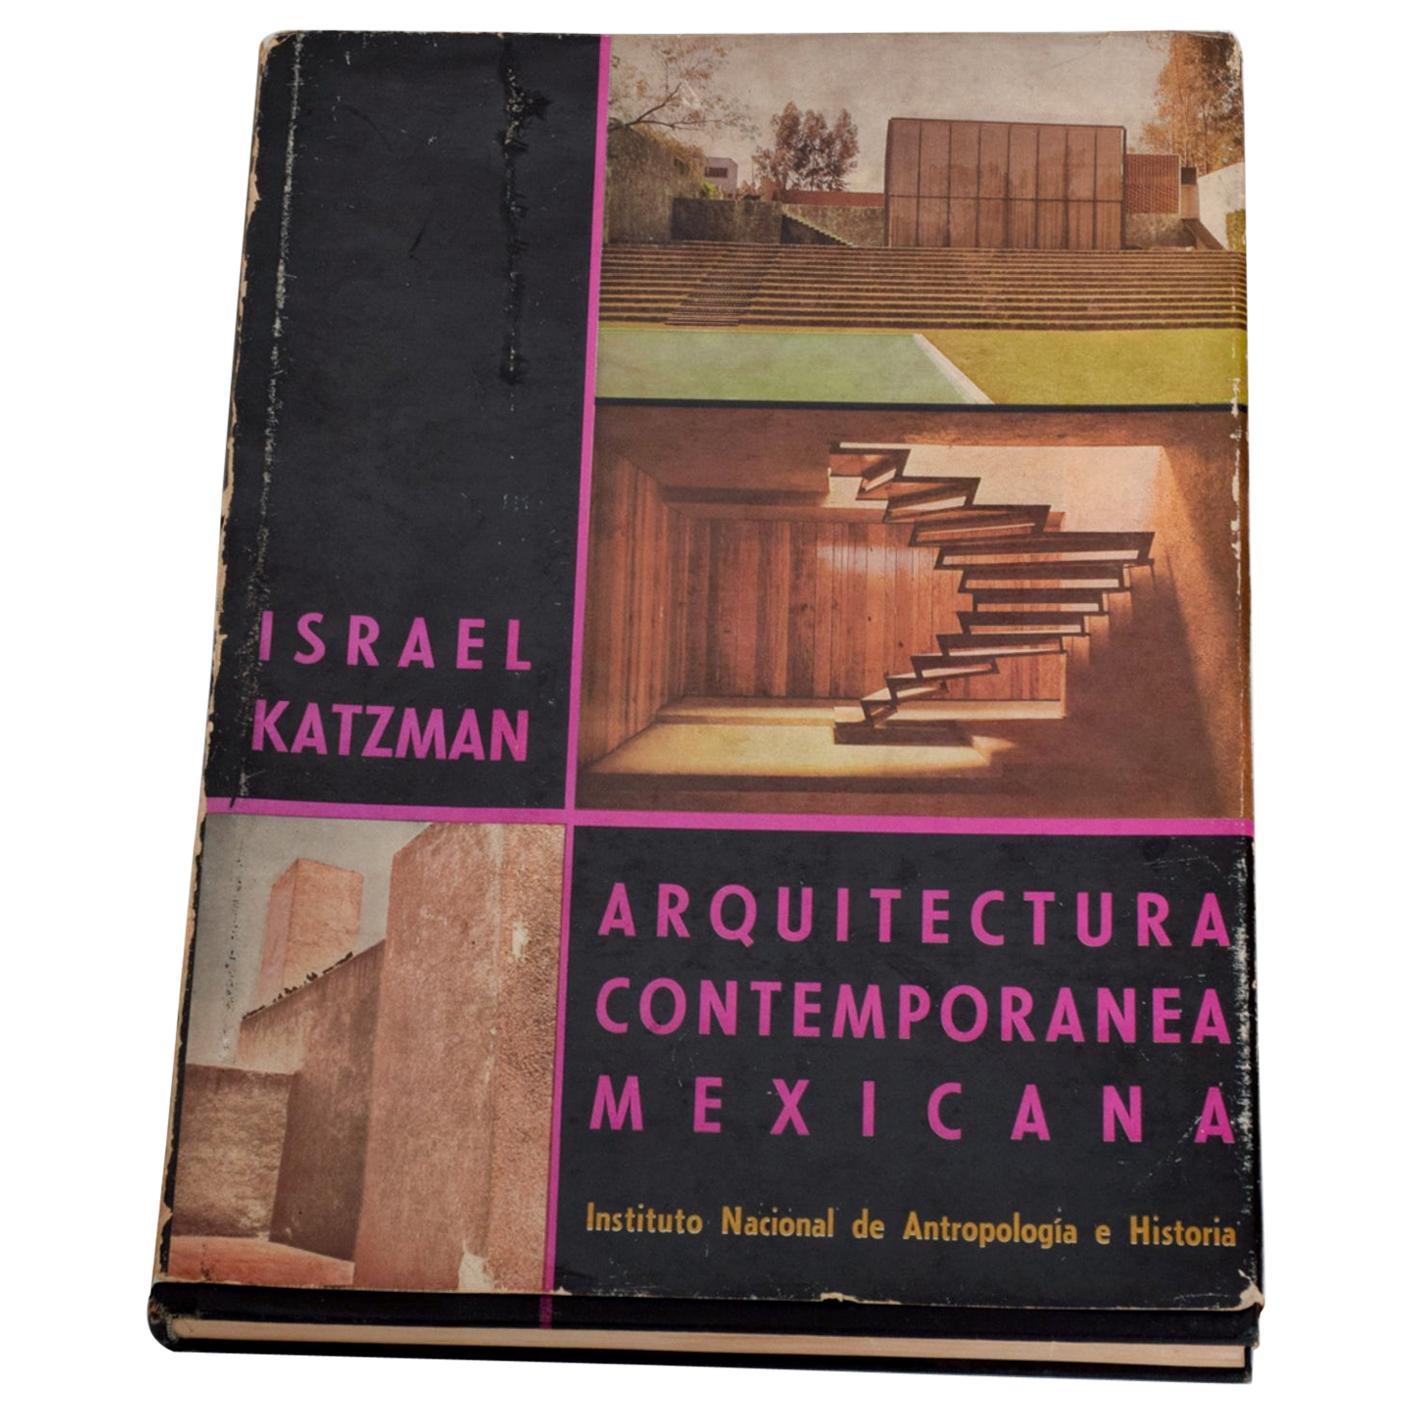 Livre Israel Katzman HC d'architecture ' La Arquitectura Contemporanea Mexicana ', 1964